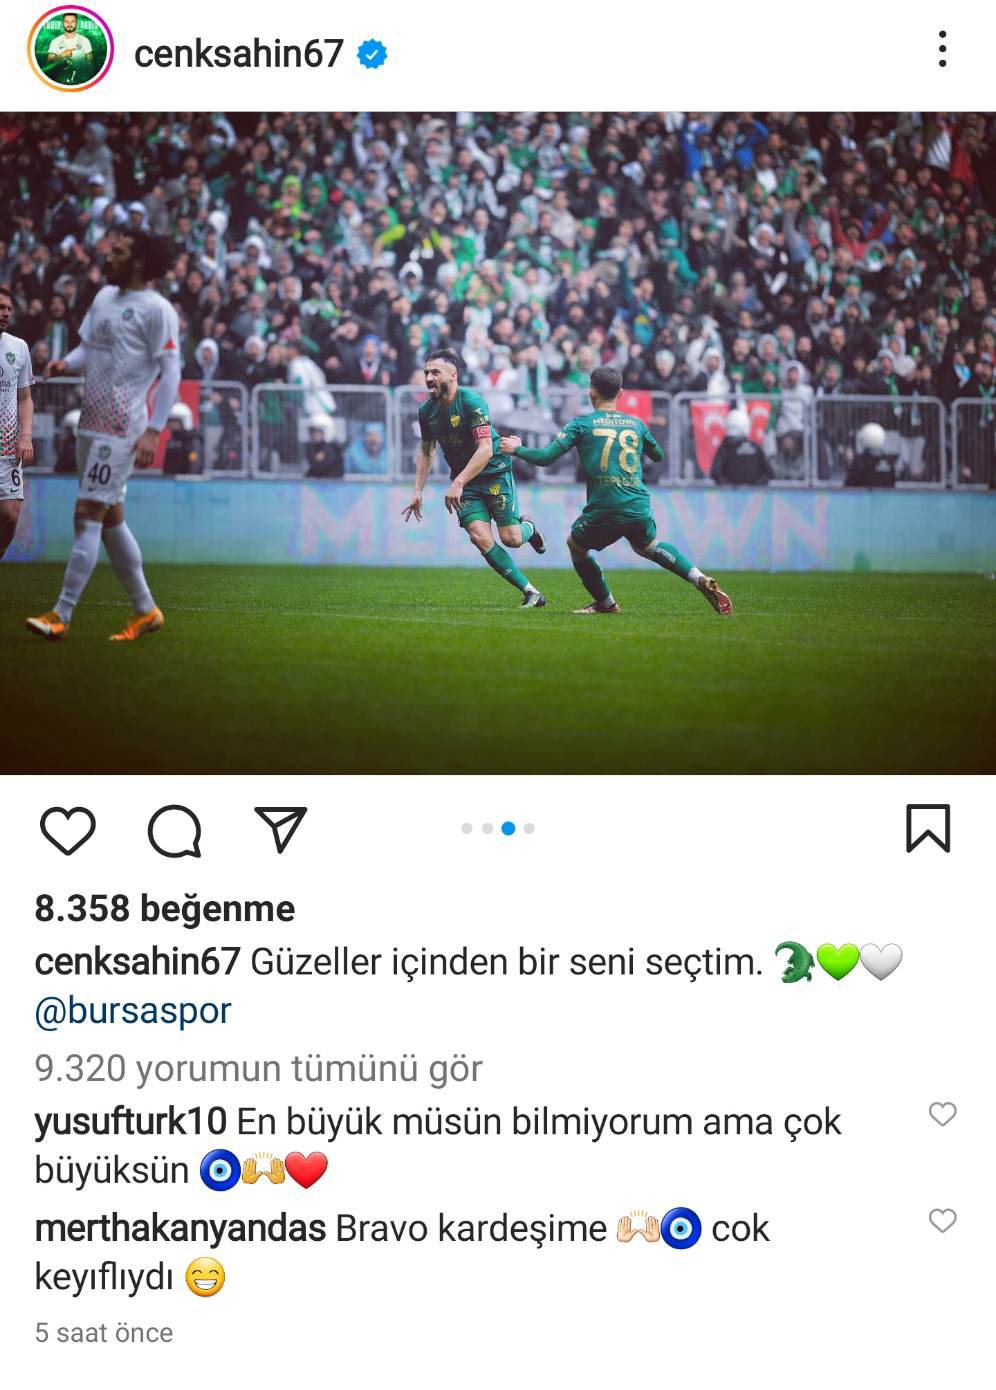 Fenerbahçeli Mert Hakan'dan, Amedspor'a gol atan Cenk Şahin'in paylaşımına dikkat çeken yorum: Bravo kardeşim, çok keyifliydi